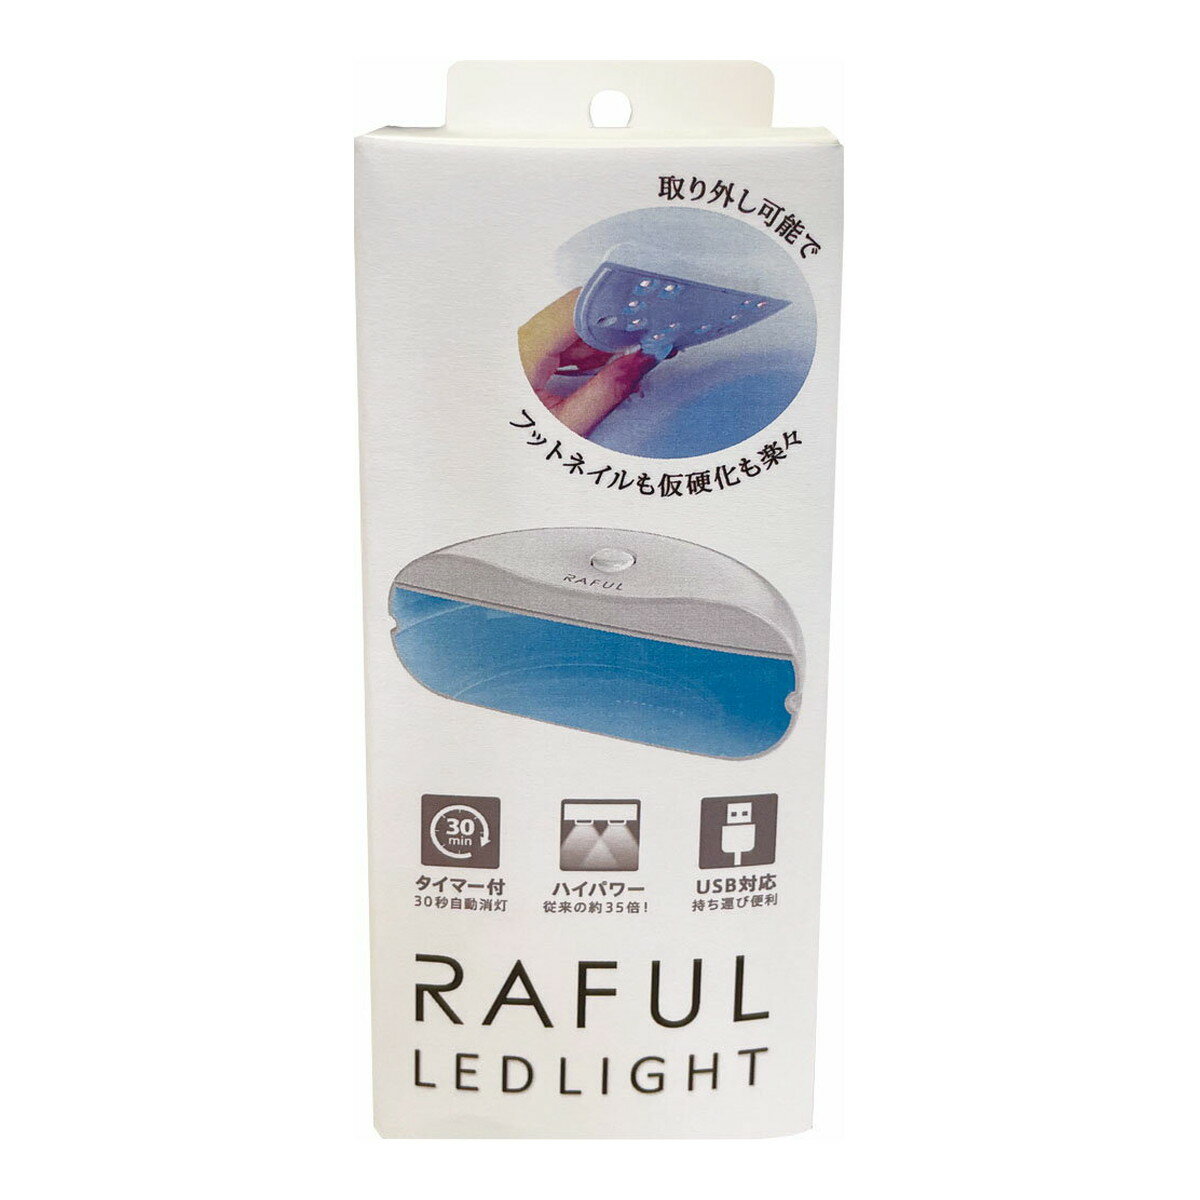 商品名：柳瀬 RAFUL ラフル RF-LED ネイルライト ジェルネイル用LEDライト内容量：1個JANコード：4949130146560発売元、製造元、輸入元又は販売元：柳瀬原産国：台湾（台湾省/中華民国）商品番号：103-4949130146560商品説明ジェルネイル用LEDライト。ハンディ・スタンド2WAYタイプ。マグネット式でライト部は取り外し可能、フットネイルも仮硬化も楽々。ハイパワー30秒のタイマー付き。コンパクト軽量、USB対応で持ち運び便利。広告文責：アットライフ株式会社TEL 050-3196-1510 ※商品パッケージは変更の場合あり。メーカー欠品または完売の際、キャンセルをお願いすることがあります。ご了承ください。